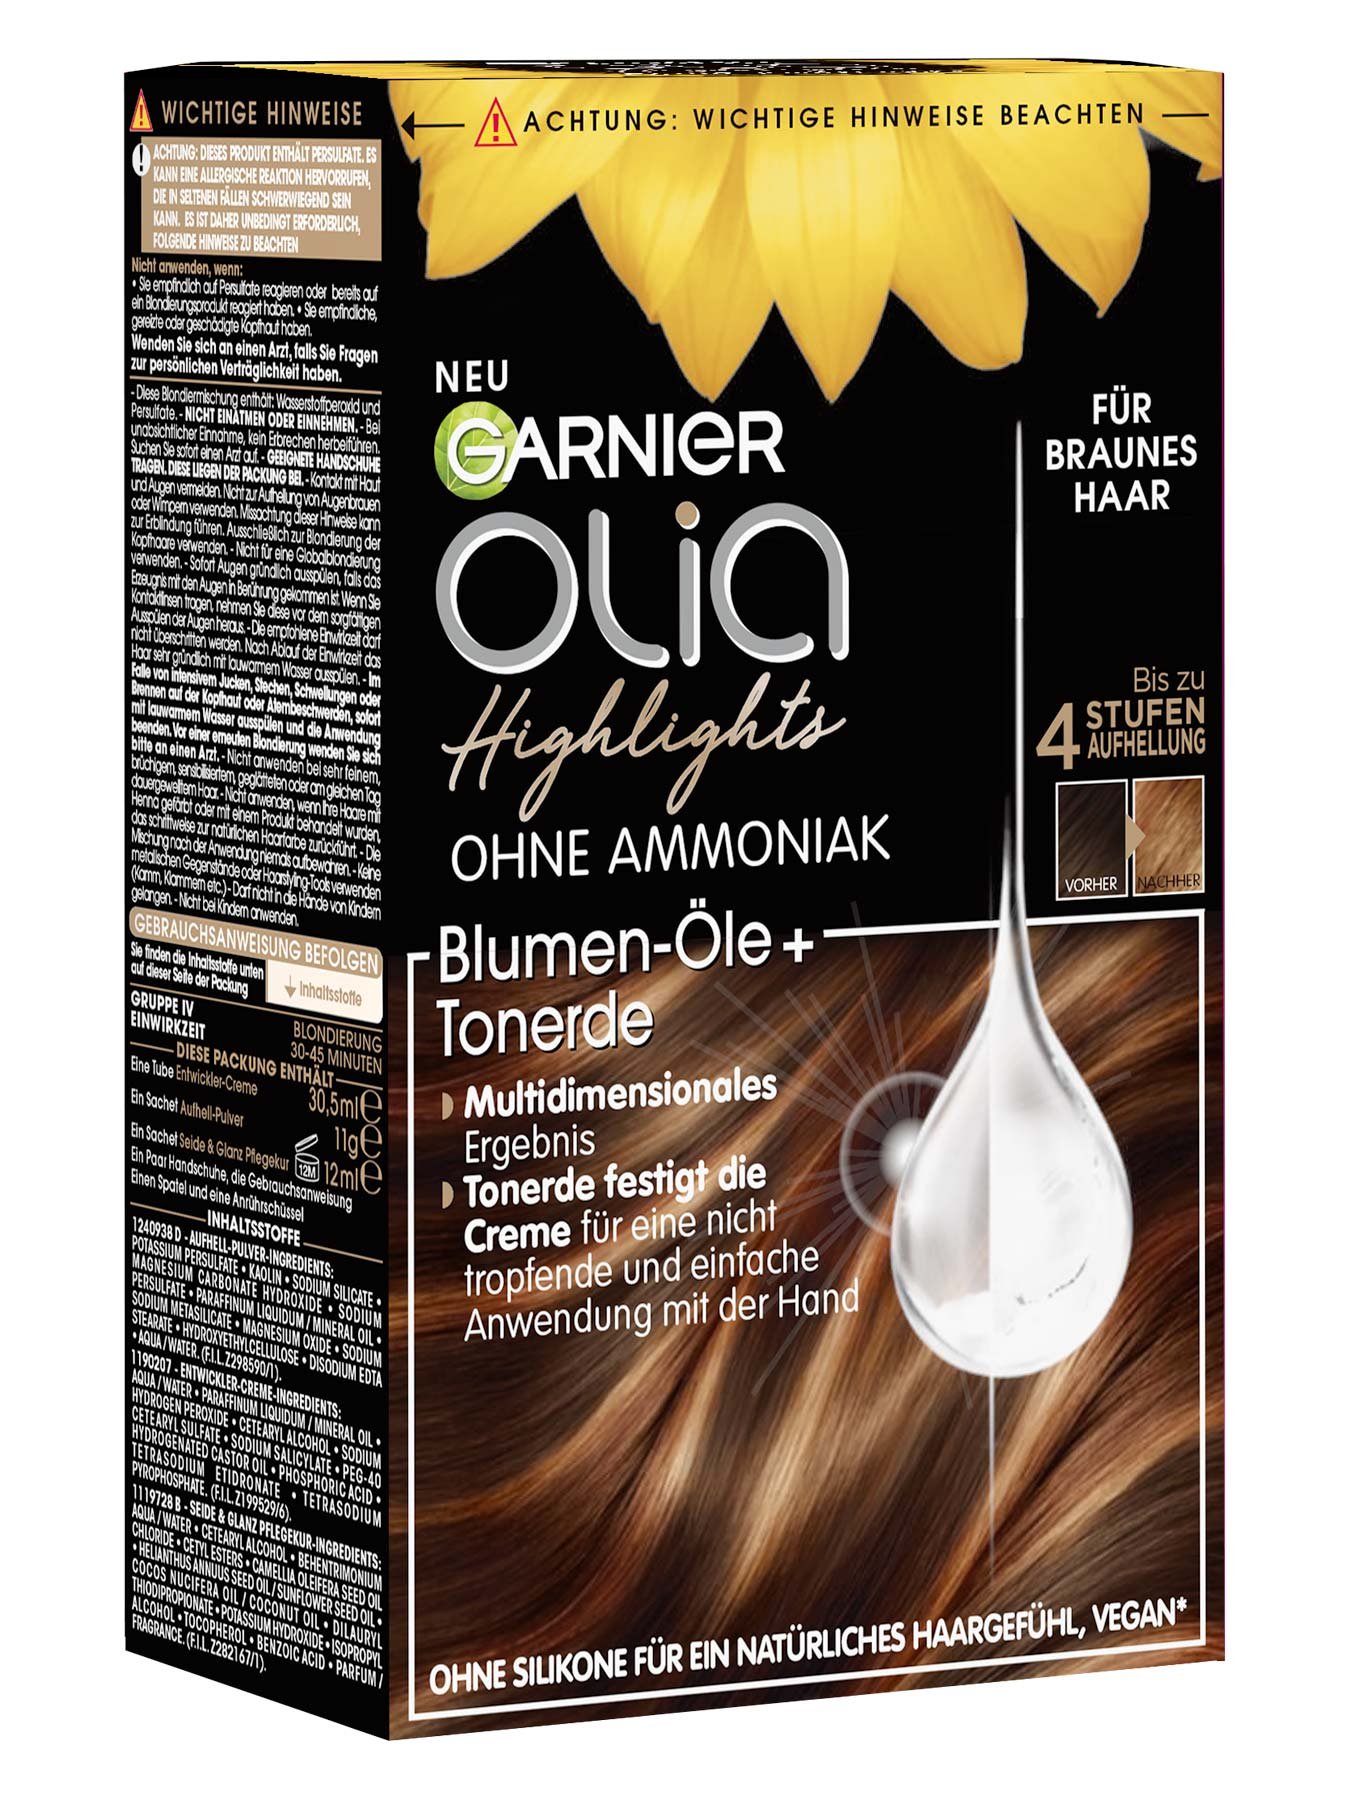 Garnier Olia Highlights für braunes Haar - Produktansicht links